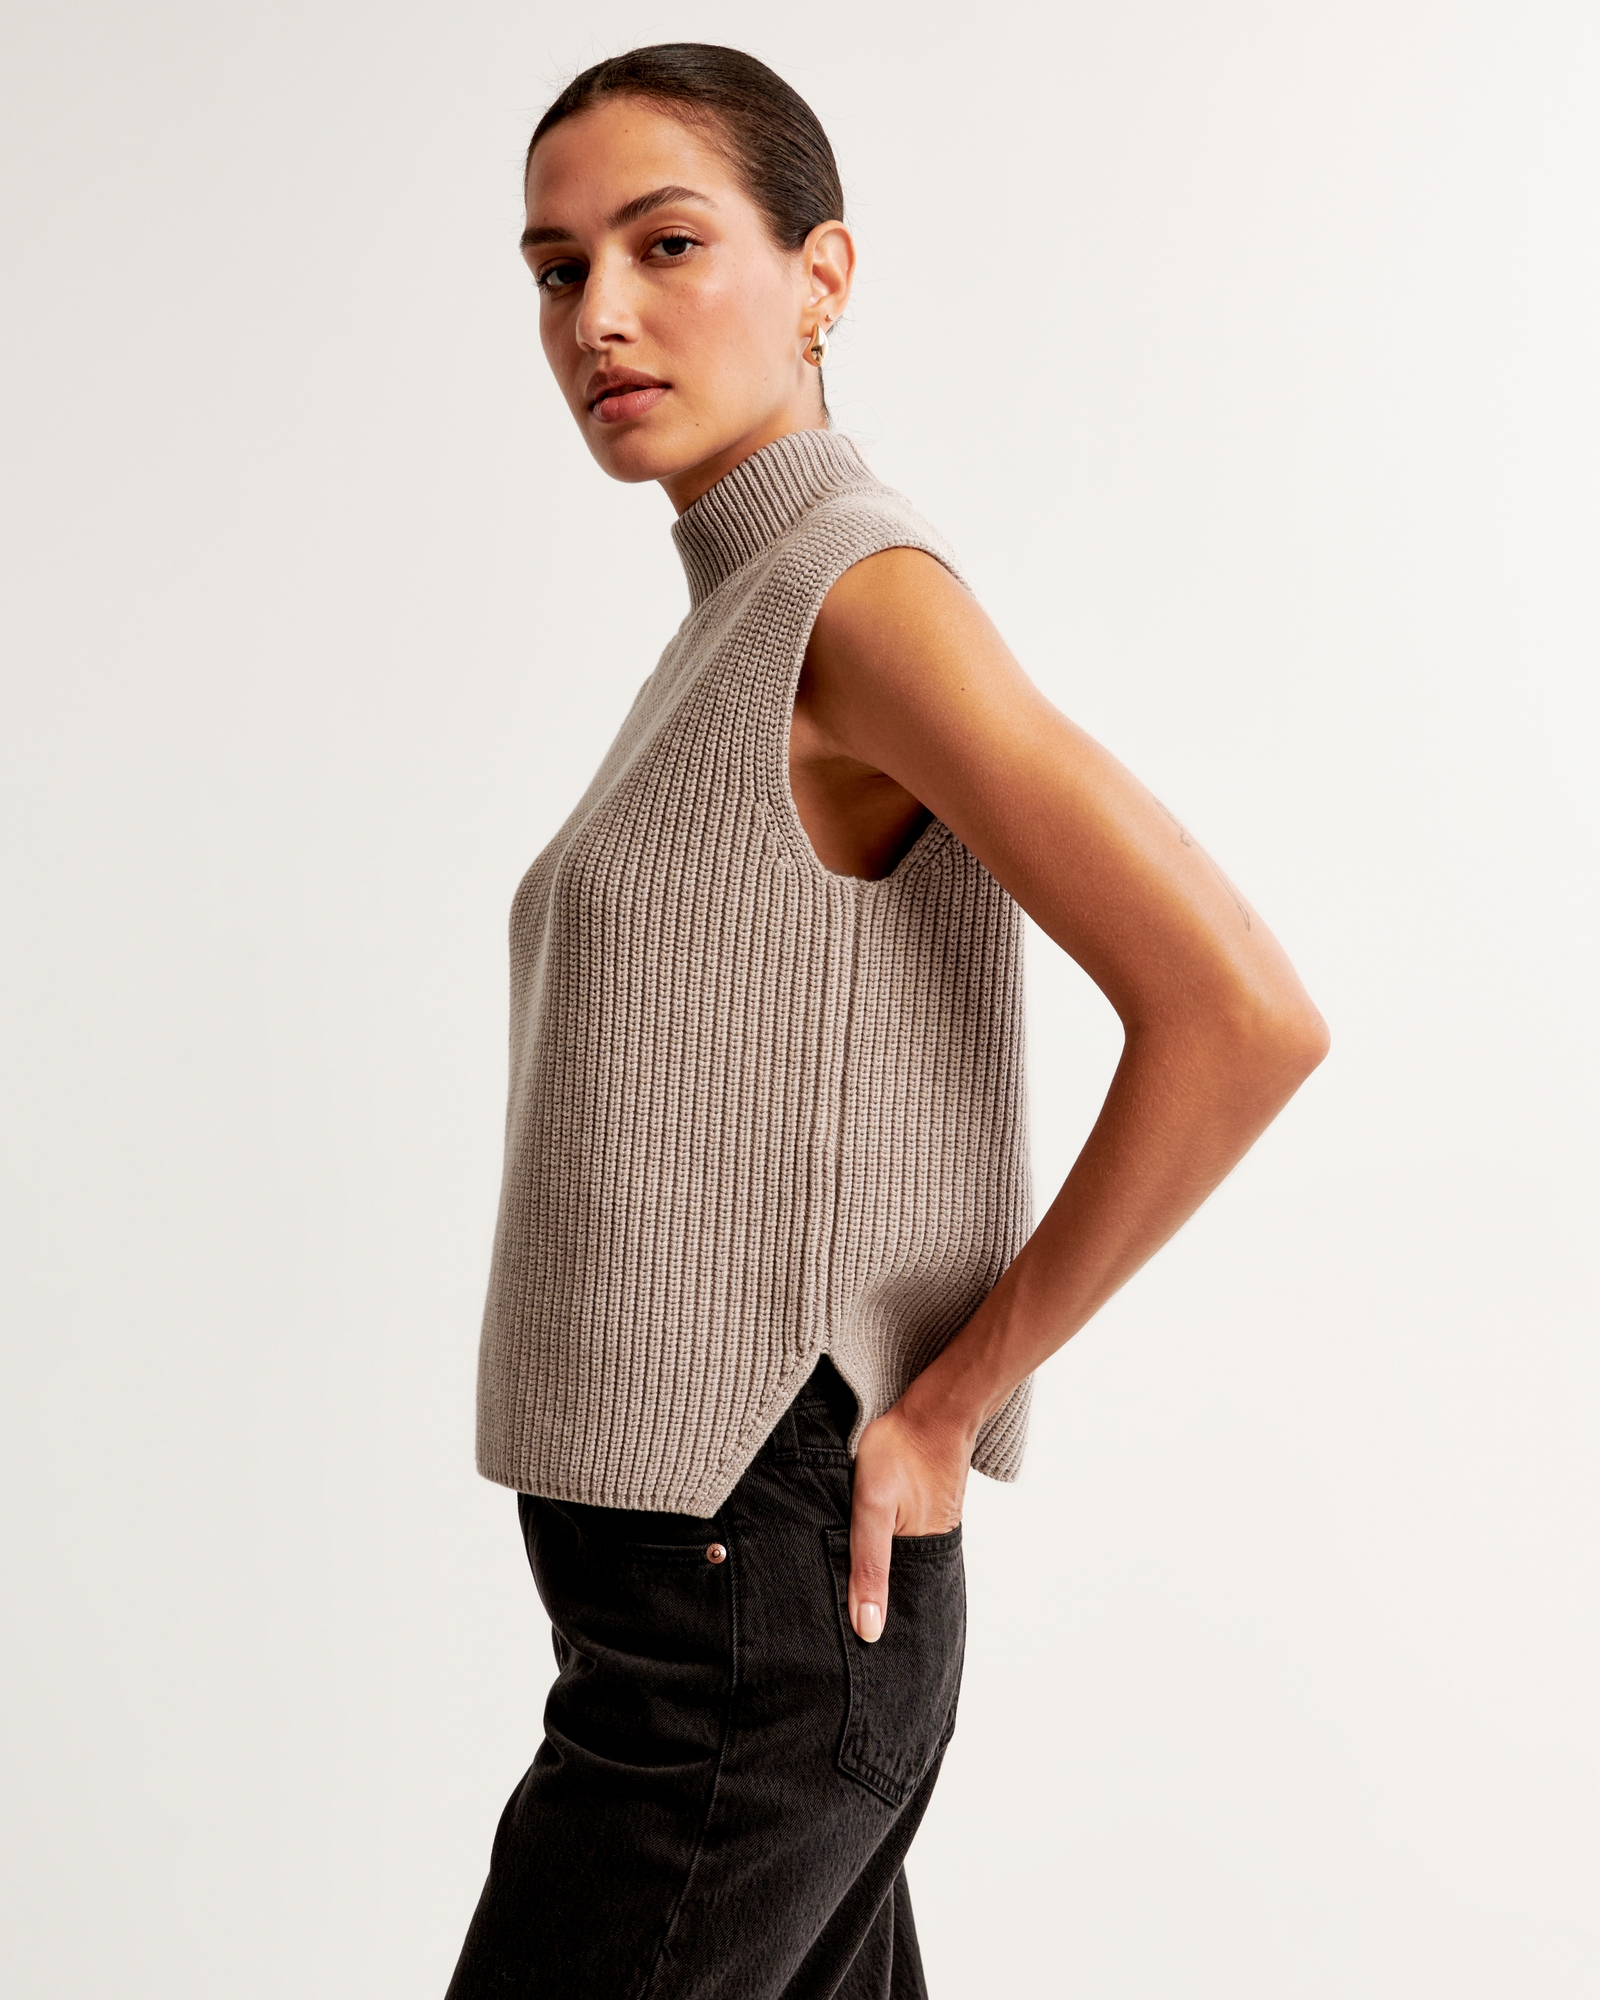 Black Eyelash Knit Top - Sleeveless Sweater Top - Turtleneck Top